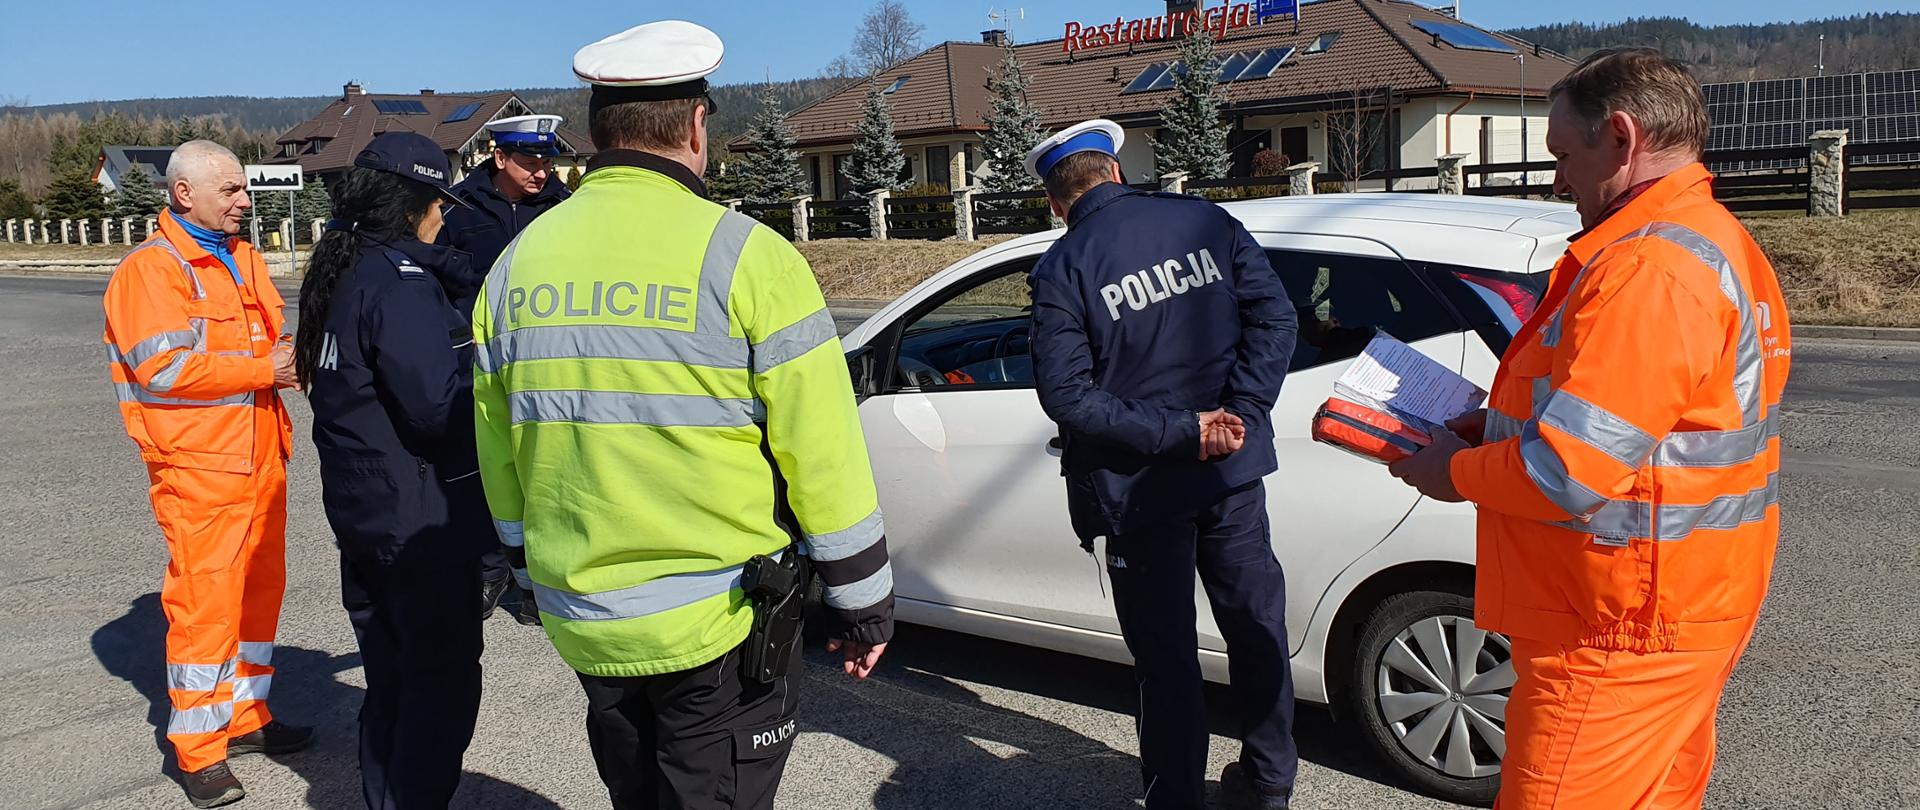 na zdjęciu widoczni czterej policjanci i dwóch pracowników GDDKiA stojących przy zatrzymanym samochodzie. W ręku pracownika GDDKiA apteczka samochodowa i ulotka GDDKiA